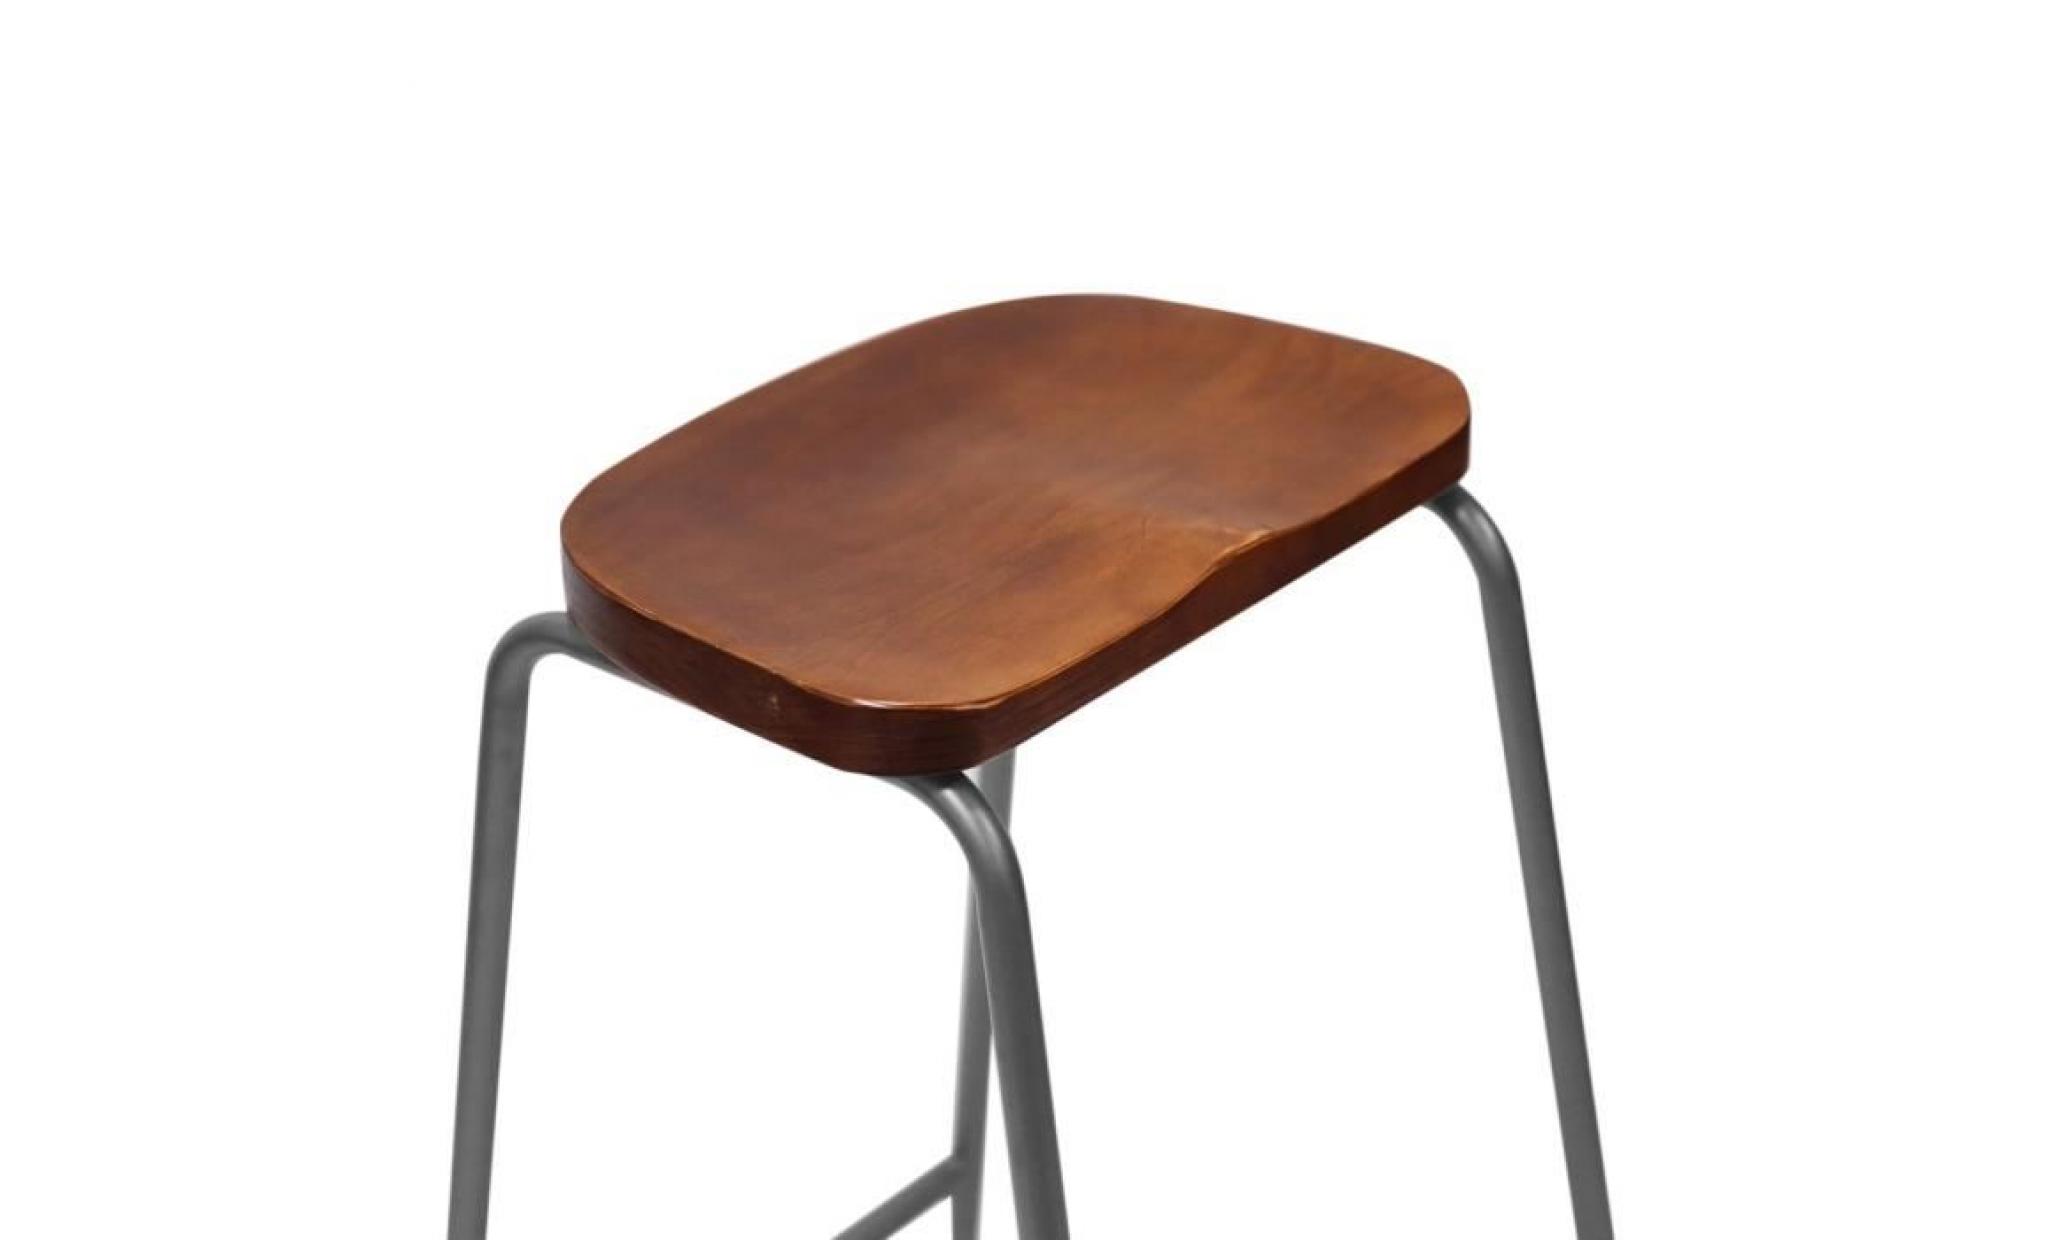 tabouret de bar chaise mobilier industriel de style industriel 45.5*39.5*66cm pas cher